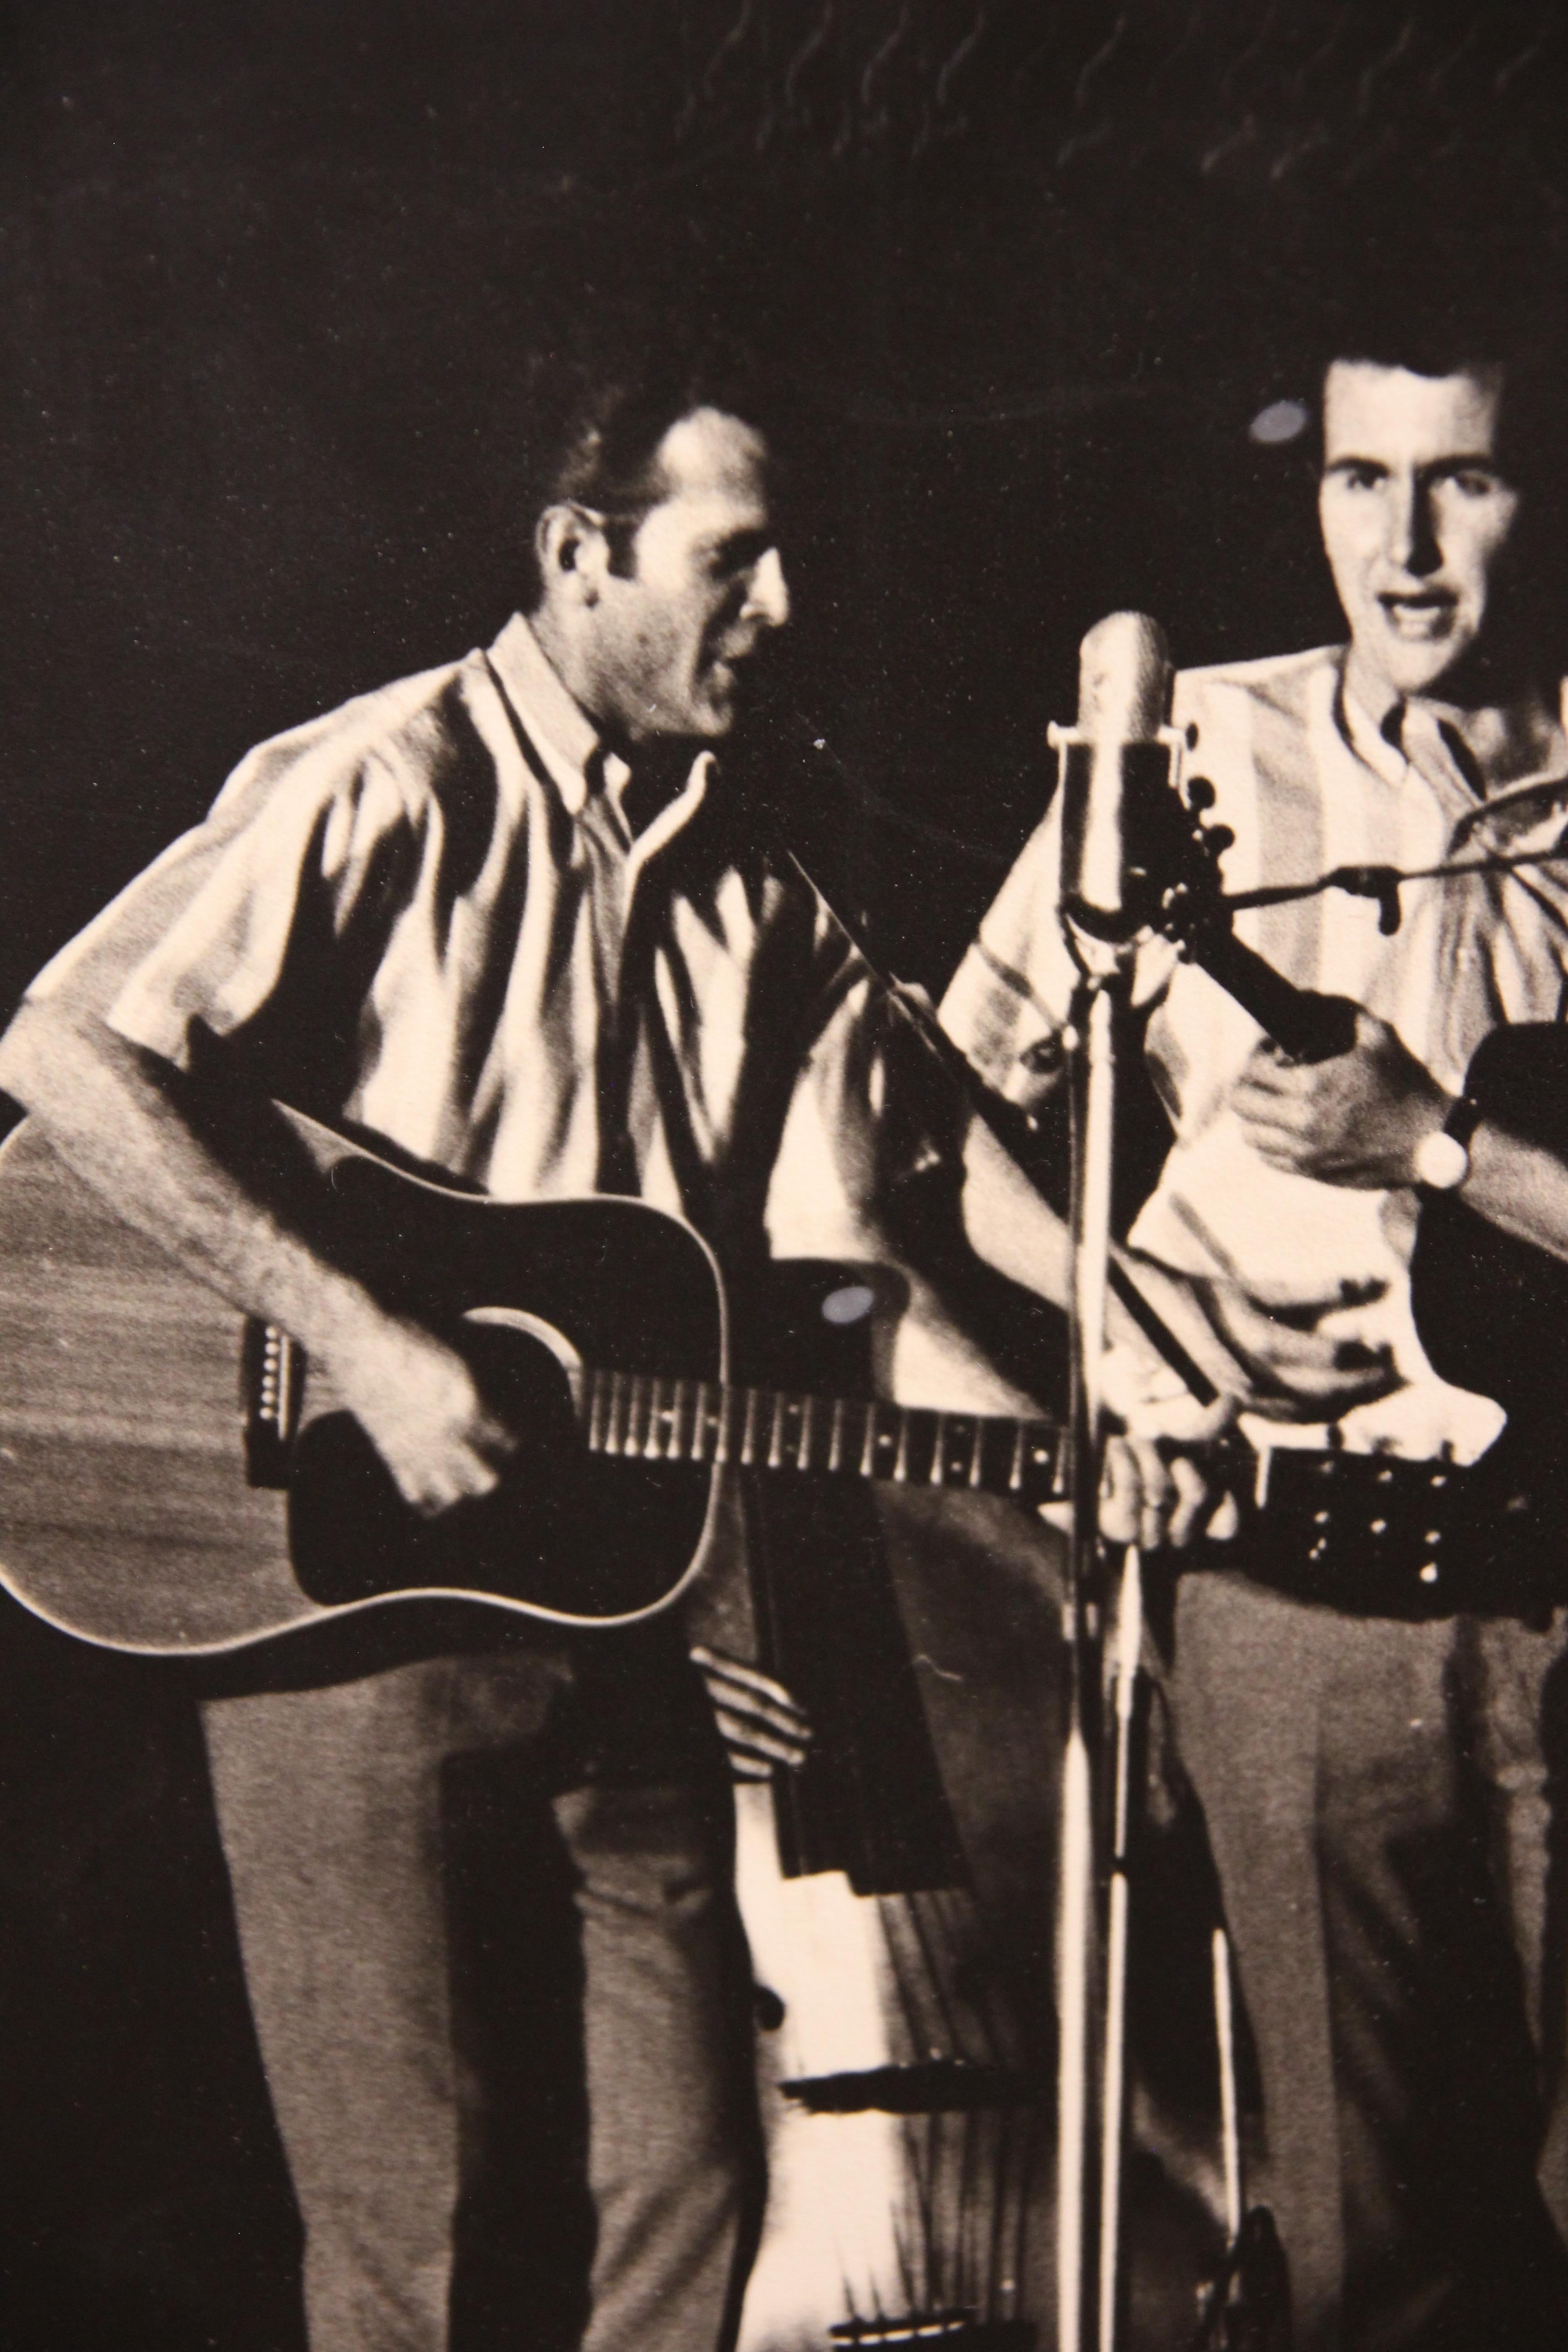 Photographie en noir et blanc du groupe de musique folk et pop américain emblématique qui a vu le jour entre la fin des années 1950 et la fin des années 1960. La photographie n'est pas encadrée mais est attachée à un panneau. 